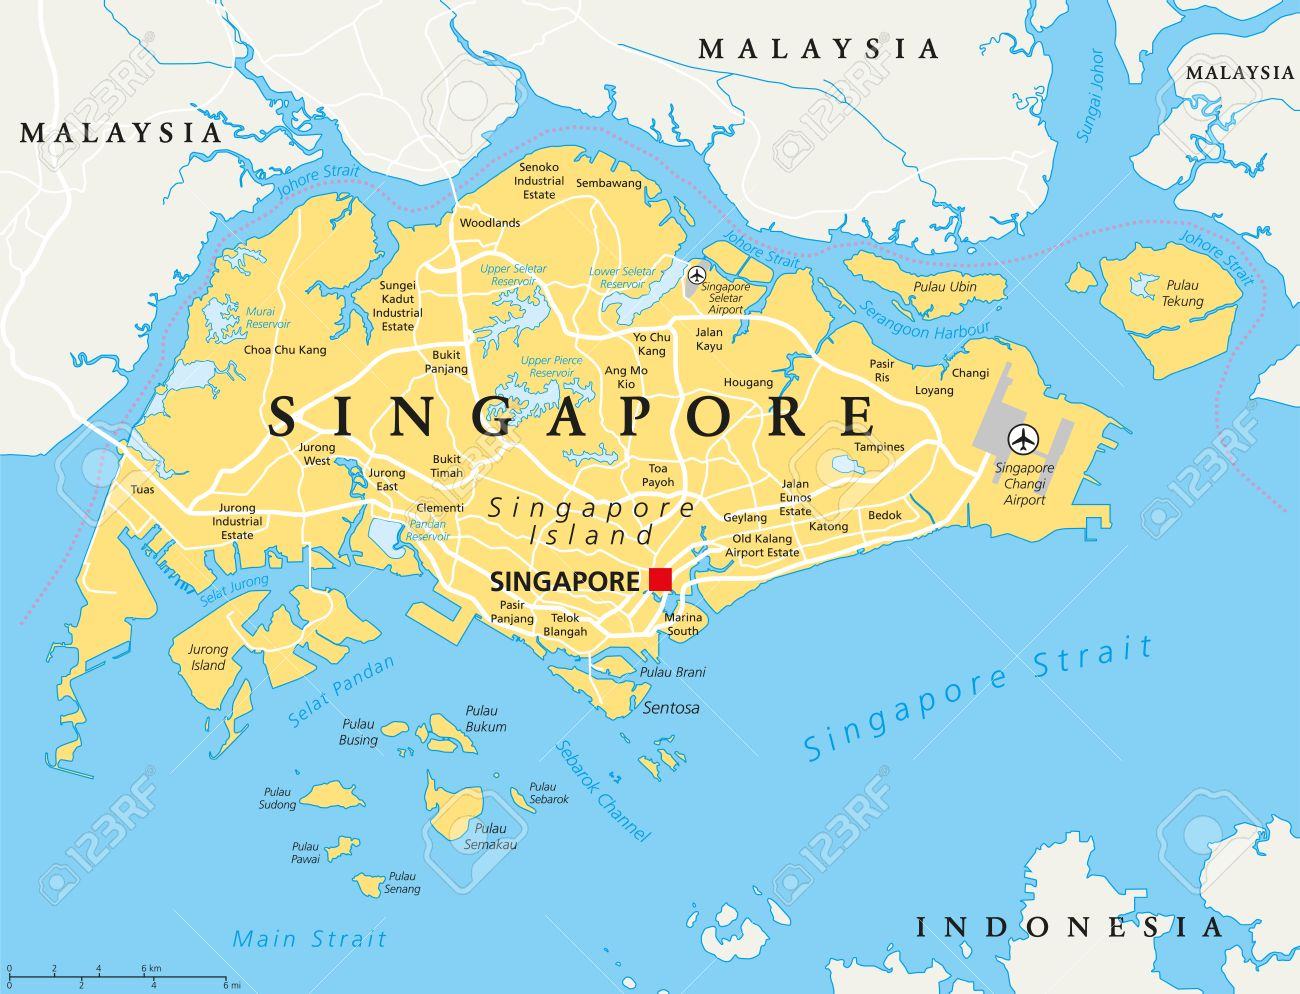 Singapore 2024:
Singapore 2024 đã chuẩn bị sẵn sàng để chào đón bạn đến thị trấn này tuyệt vời. Với những sự kiện đặc biệt được tổ chức như F1 Grand Prix, Sentosa Island Symmetry Festival và Singapore Food Festival, bạn không thể bỏ lỡ cơ hội để trải nghiệm những điều này.